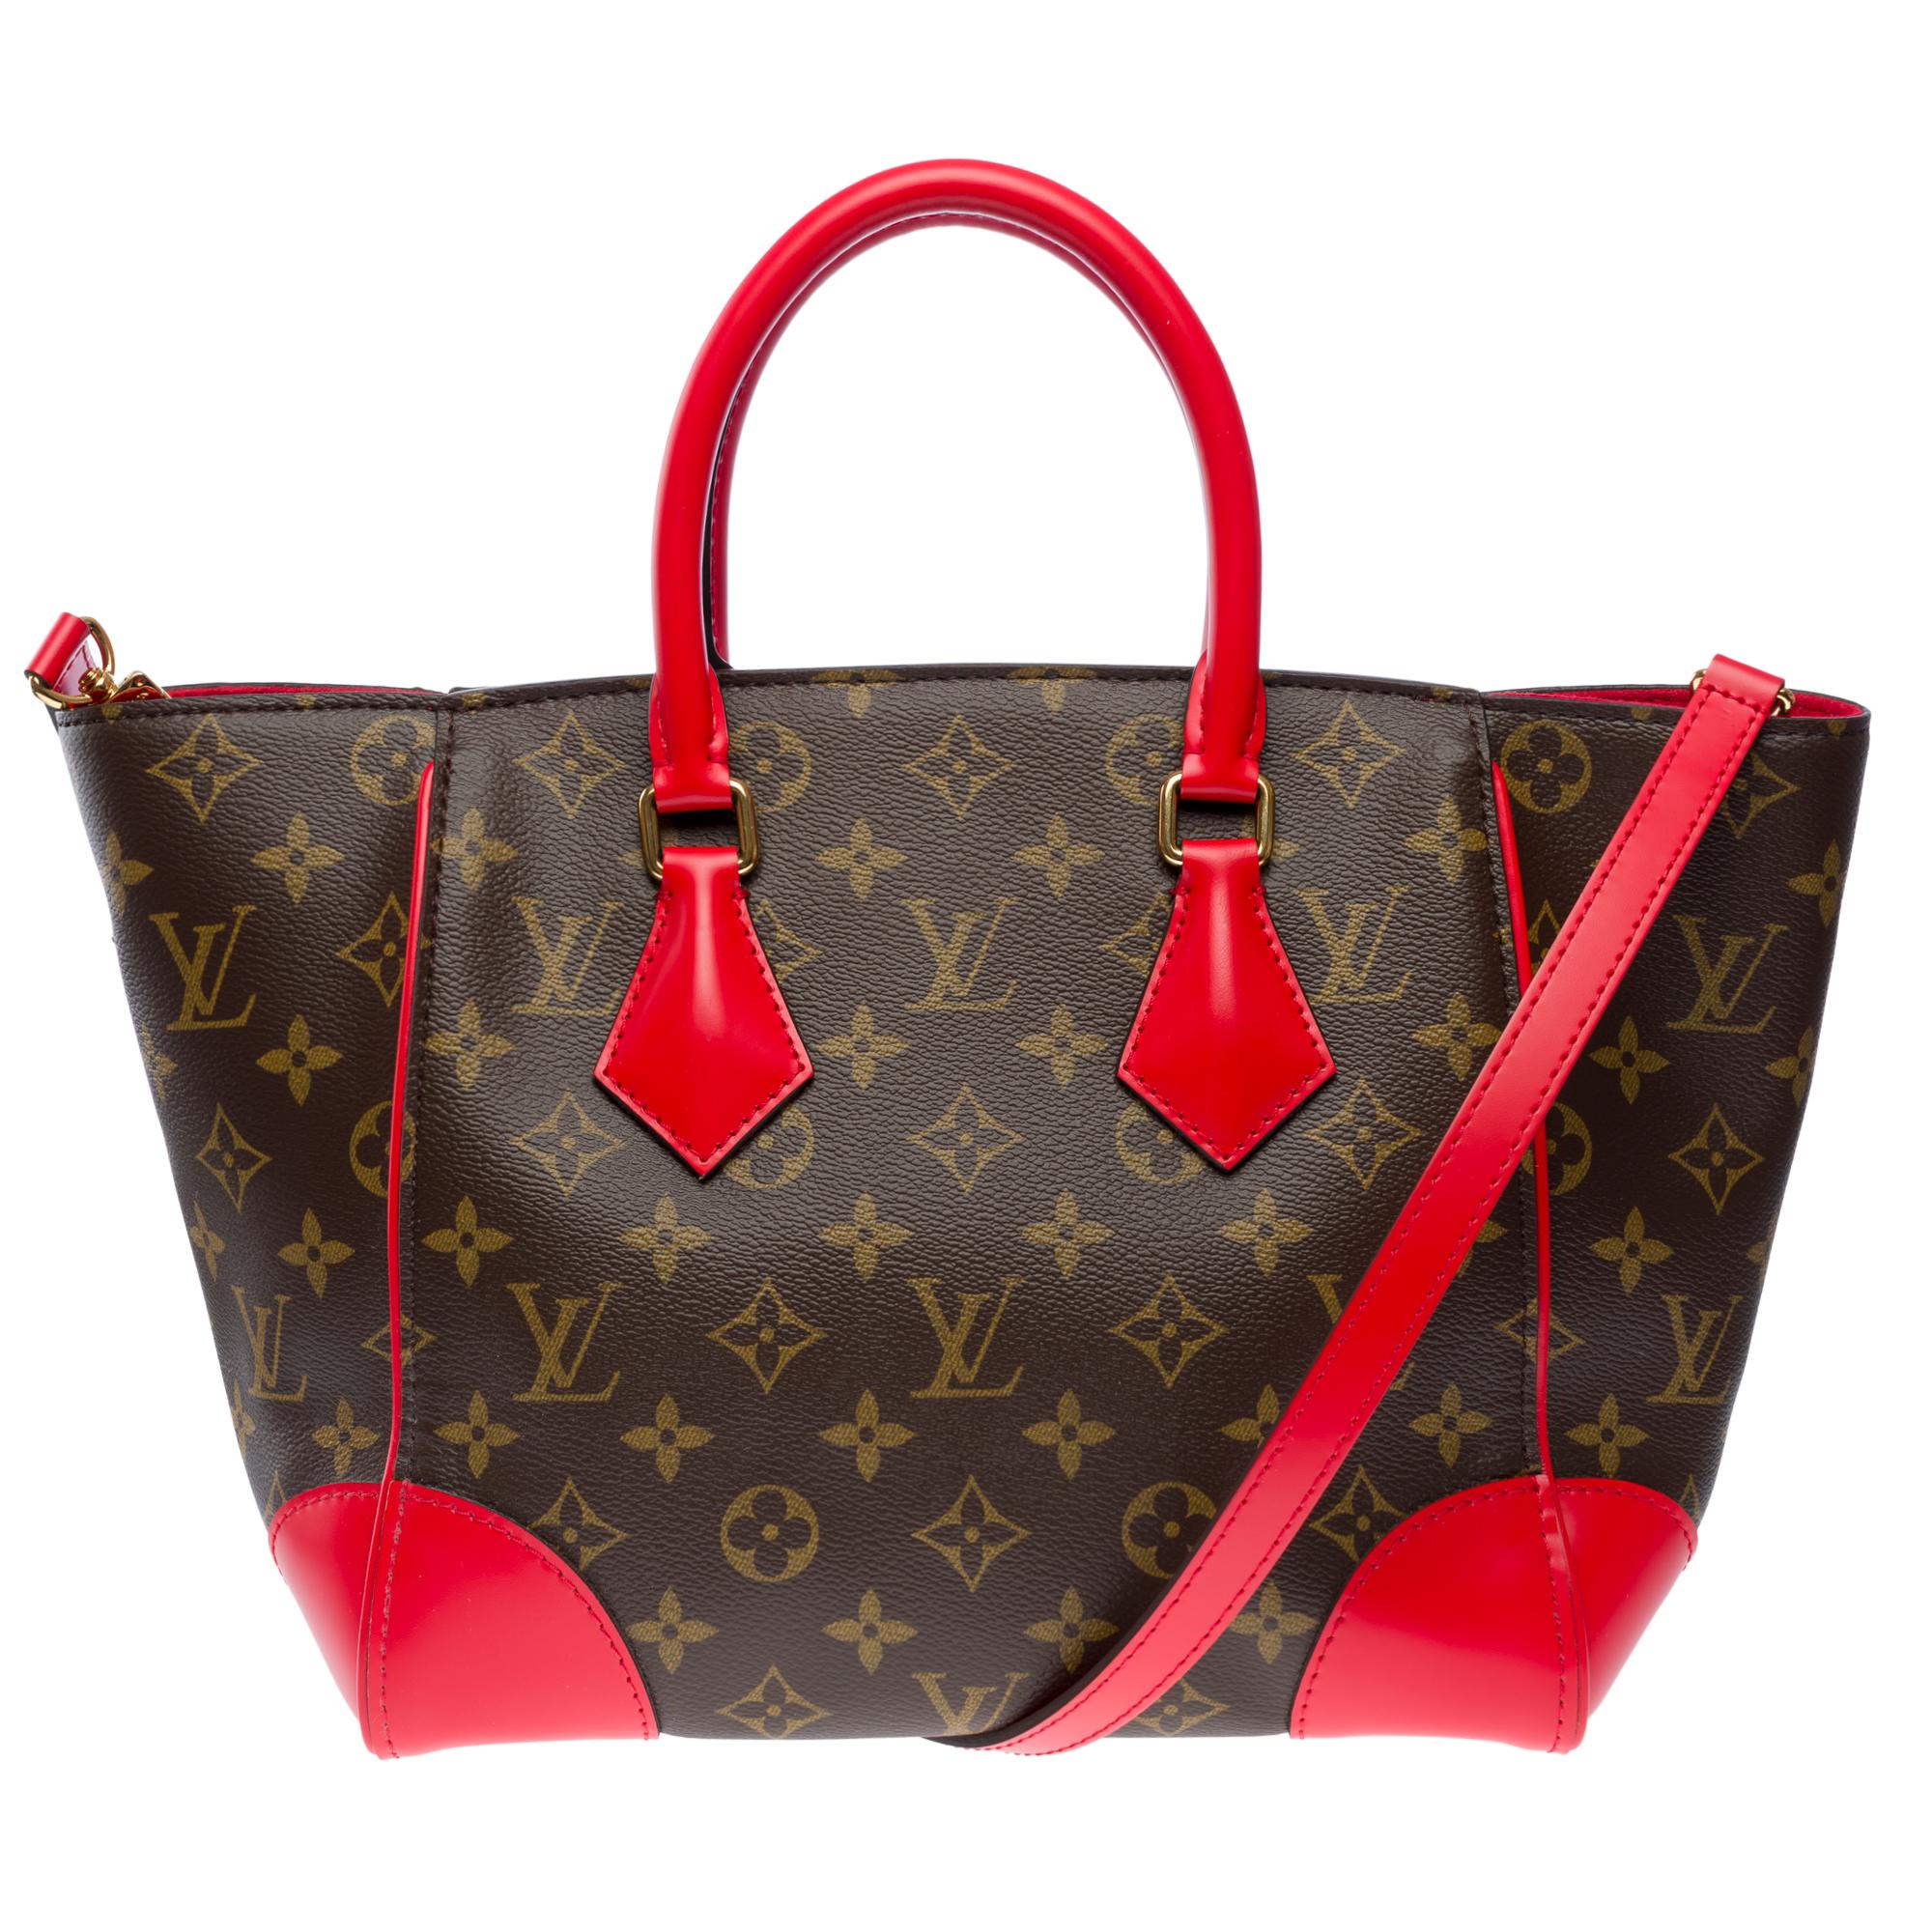 Louis Vuitton Phenix Handtaschenband aus braunem und rotem Monogram Canvas. Dieses Modell verfügt über zwei rote Rindsledergriffe und eine goldene Metallverzierung. Kann in der Hand, über der Schulter oder am Körper getragen werden

Monogram braune